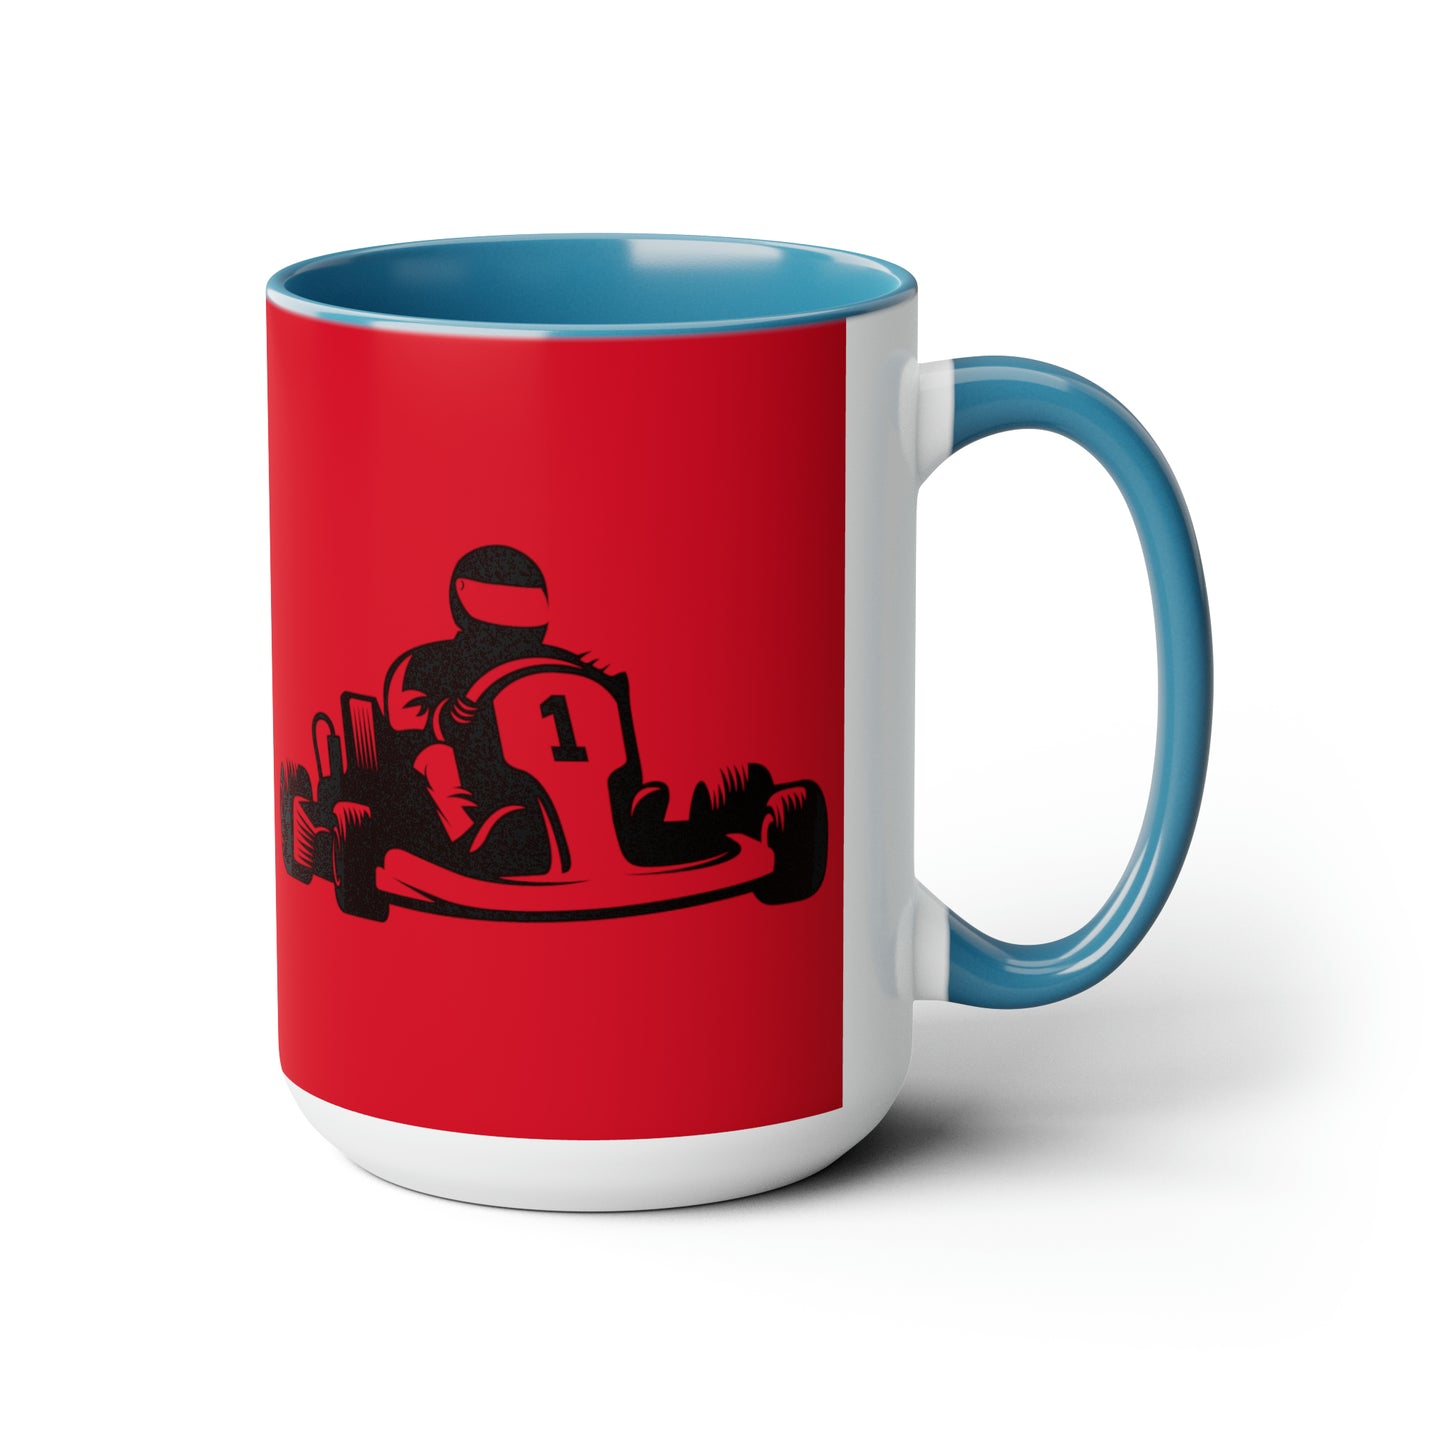 Two-Tone Coffee Mugs, 15oz: Racing Dark Red